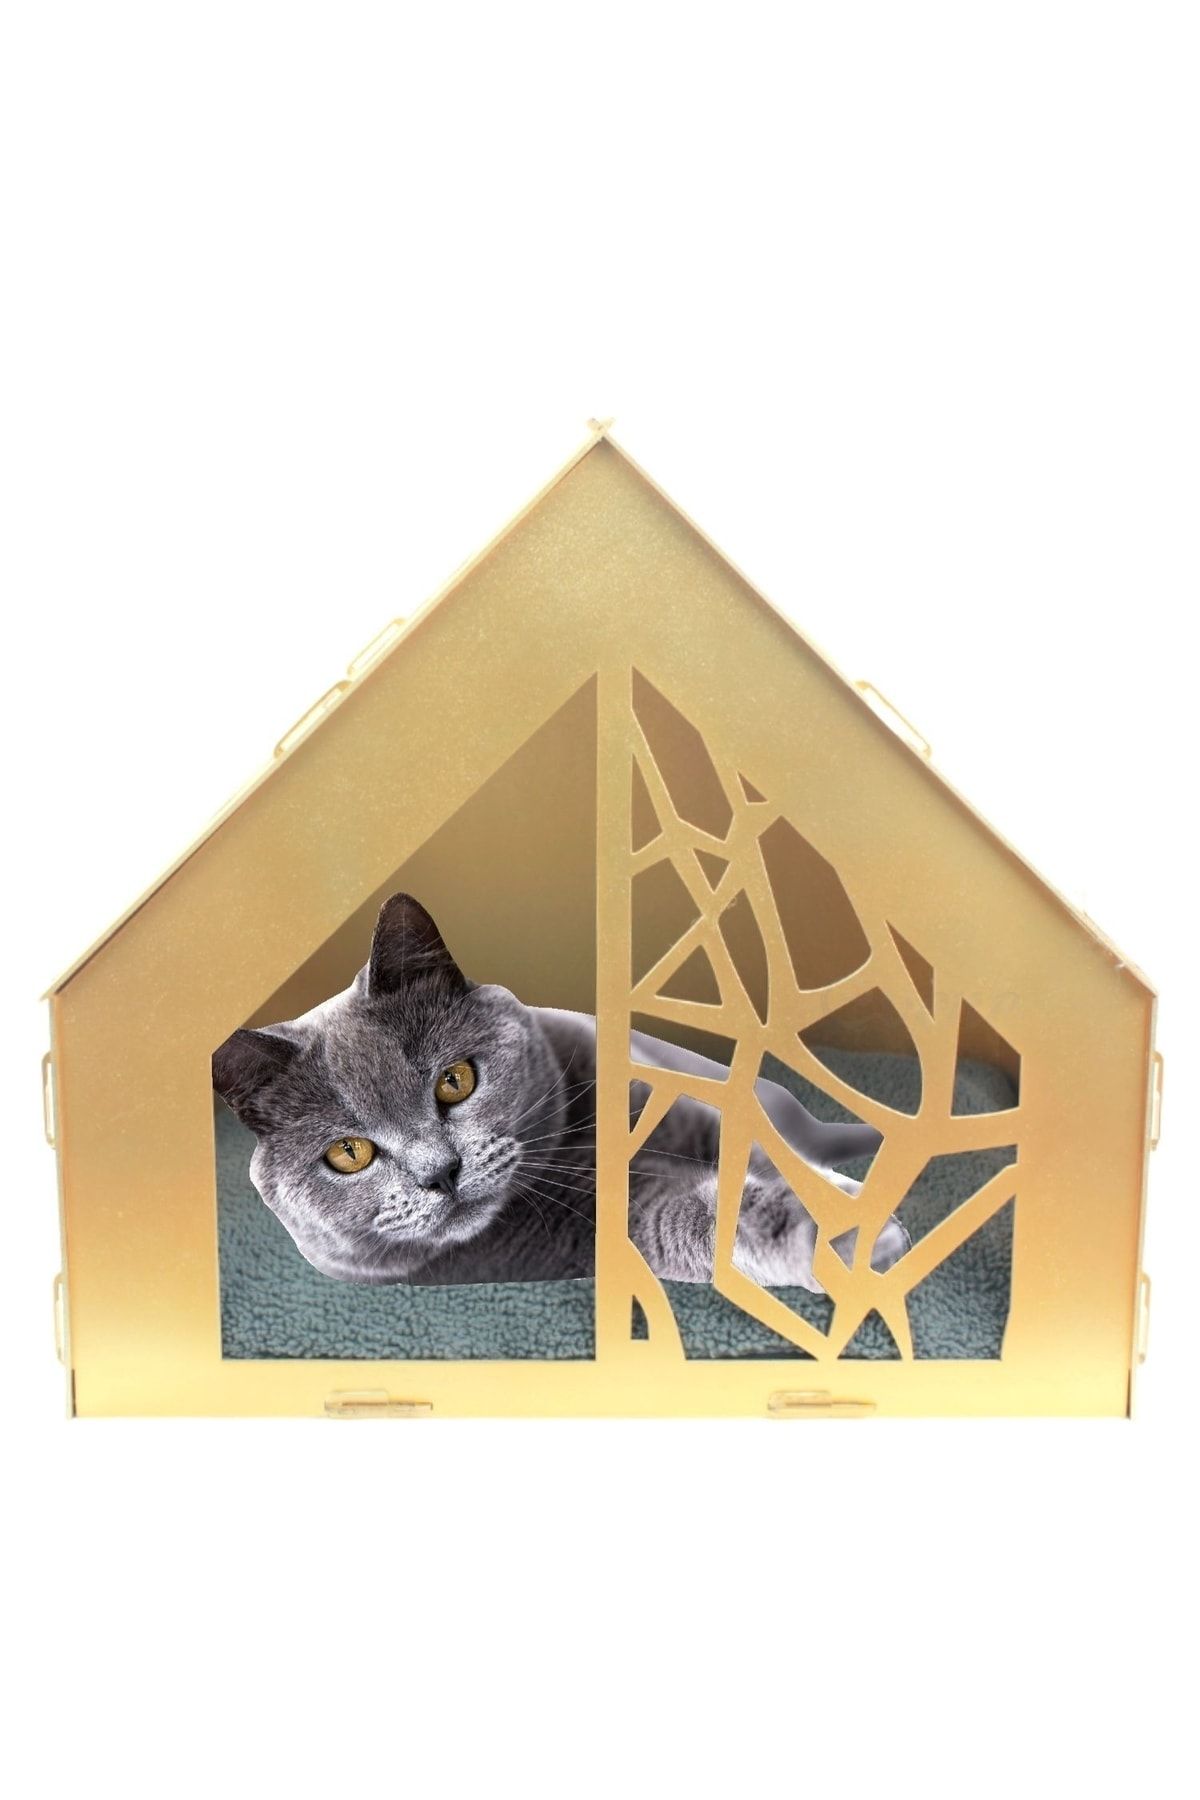 Evene Büyük Kedi Evi Dekoratif Ahşap Dayanıklı Altın Renk 50x35 Cm Kedi Yatağı Seperatör Model